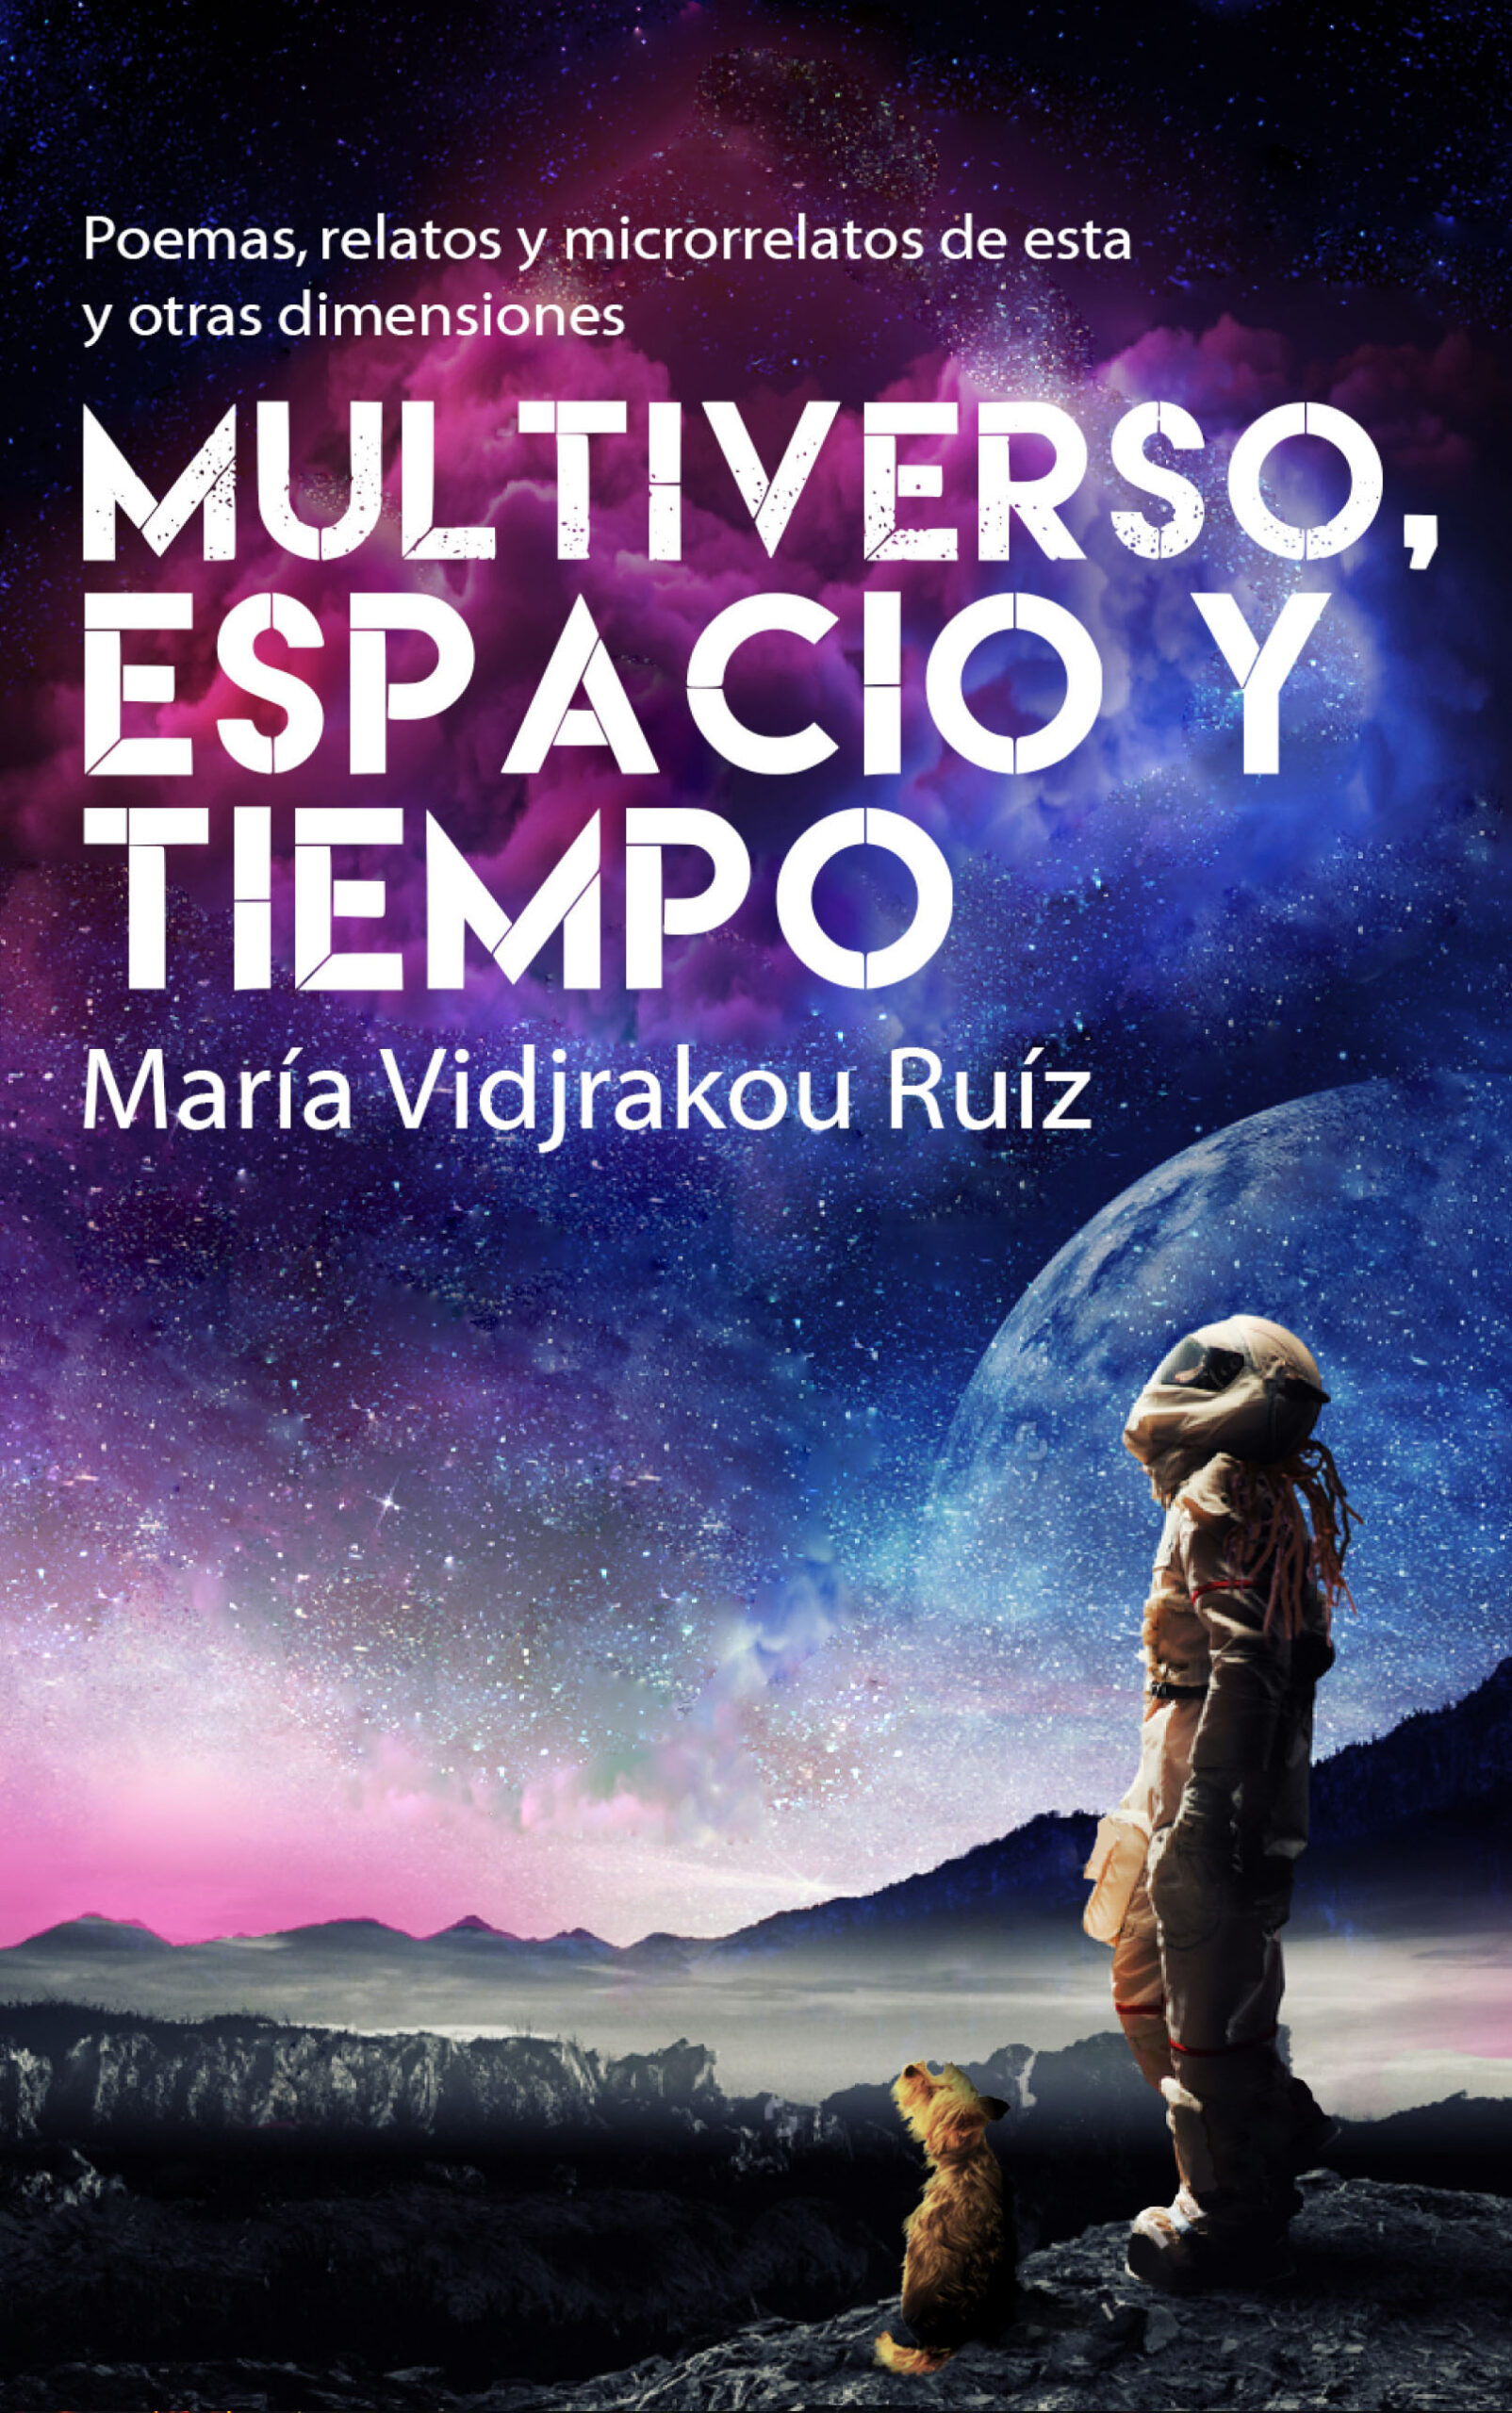 Multiverso, espacio y tiempo, de María Vidjrakou Ruiz